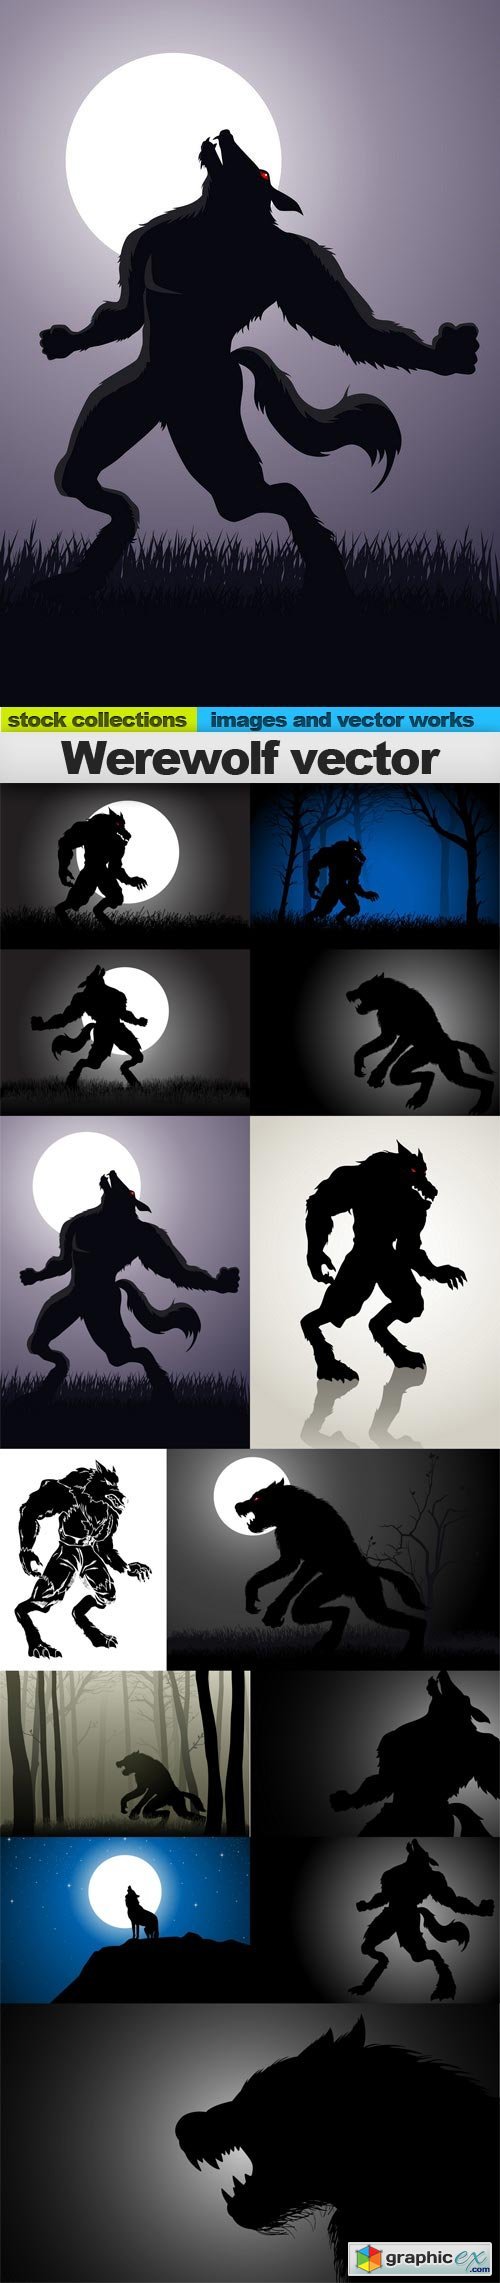 Werewolf vector, 13 x EPS